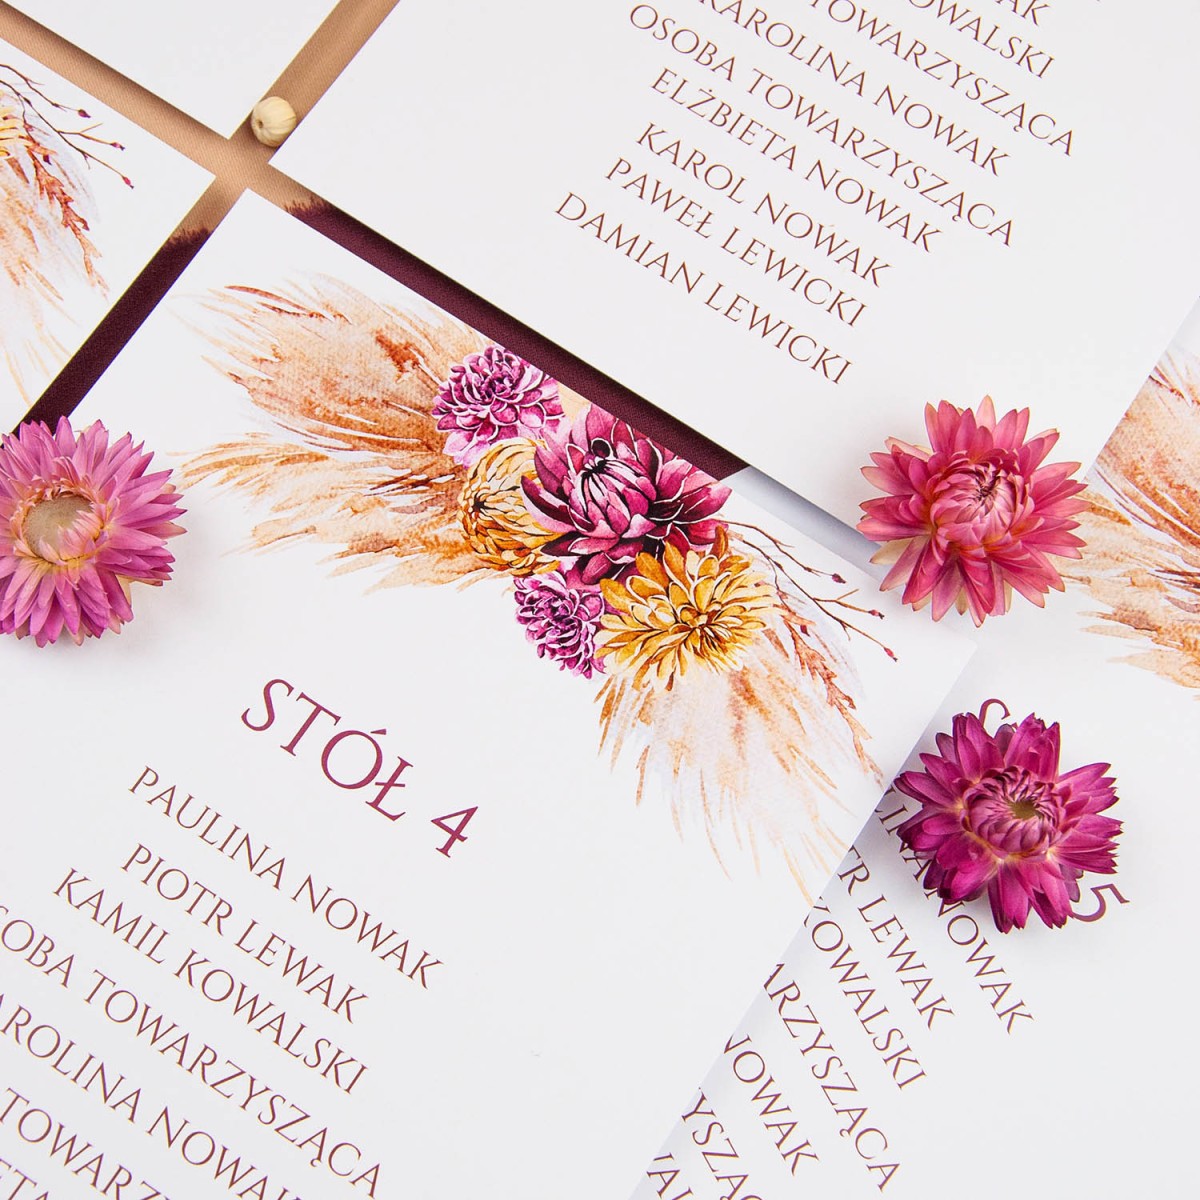 Plany stołów weselnych (rozmieszczenie gości) na pojedynczych kartach z motywem suszonych kwiatów - Sunset, Dry Leaves